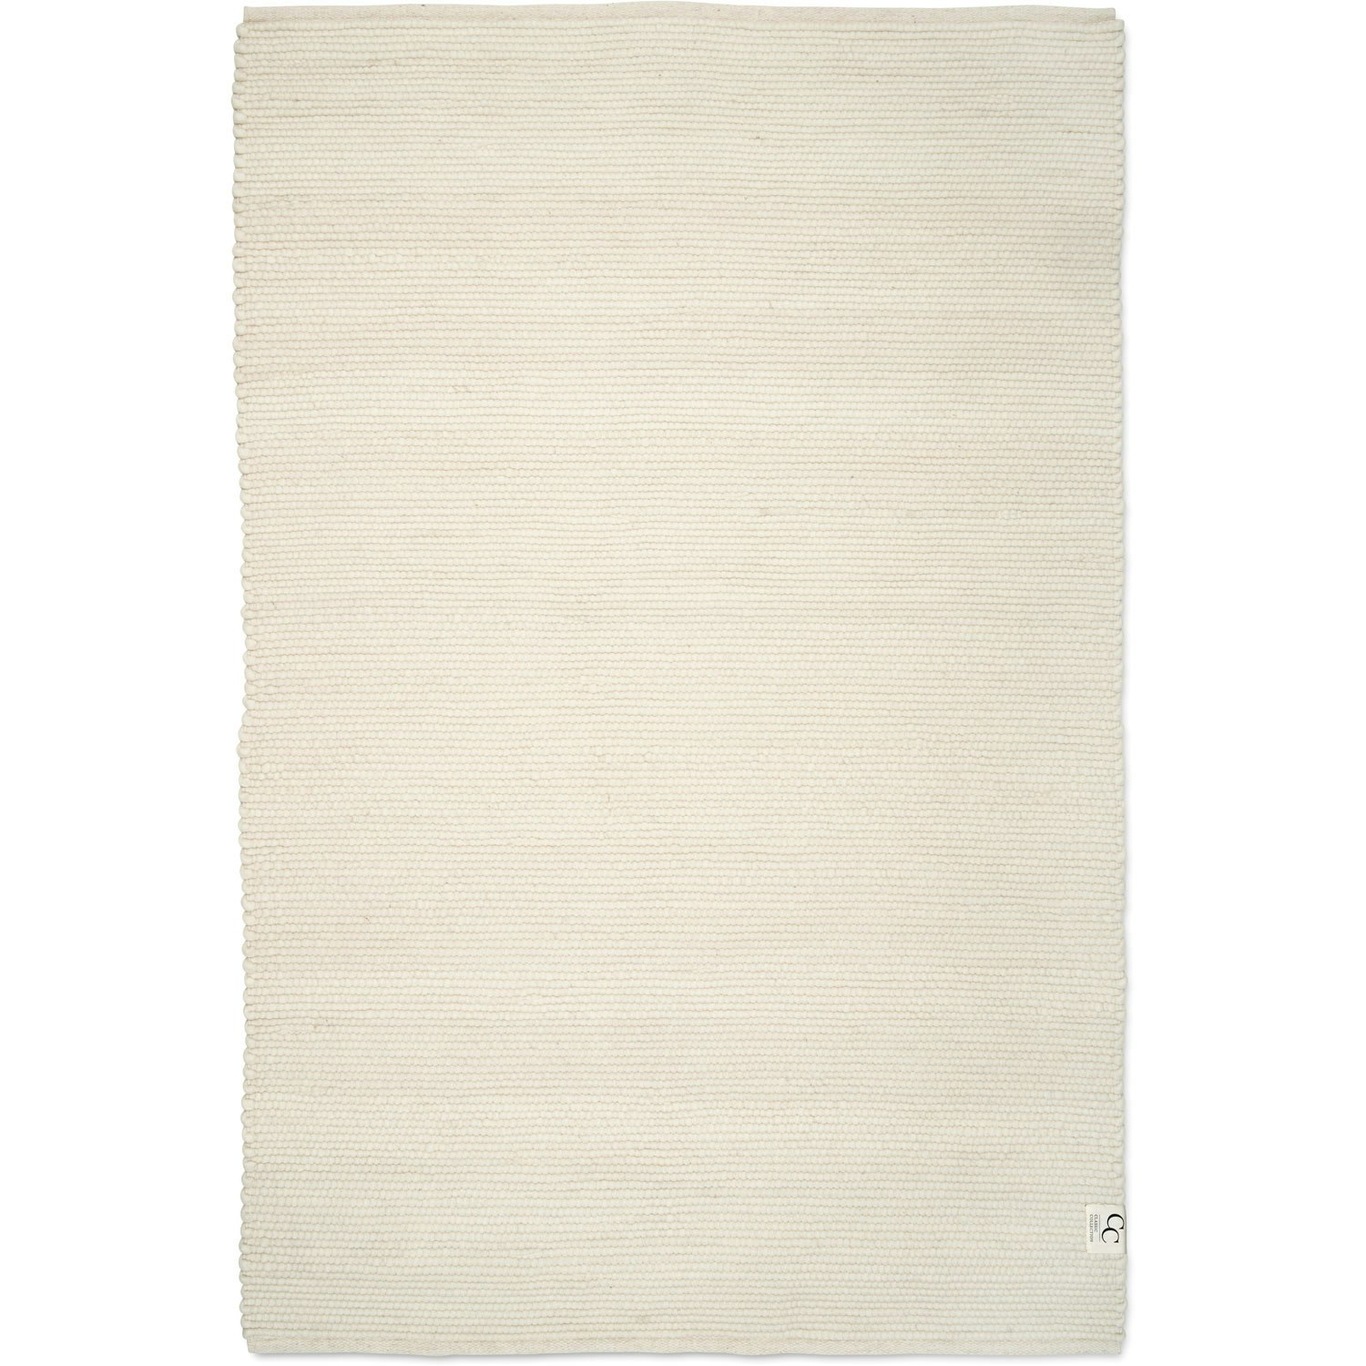 Merino Teppich 200x300 cm, Weiß